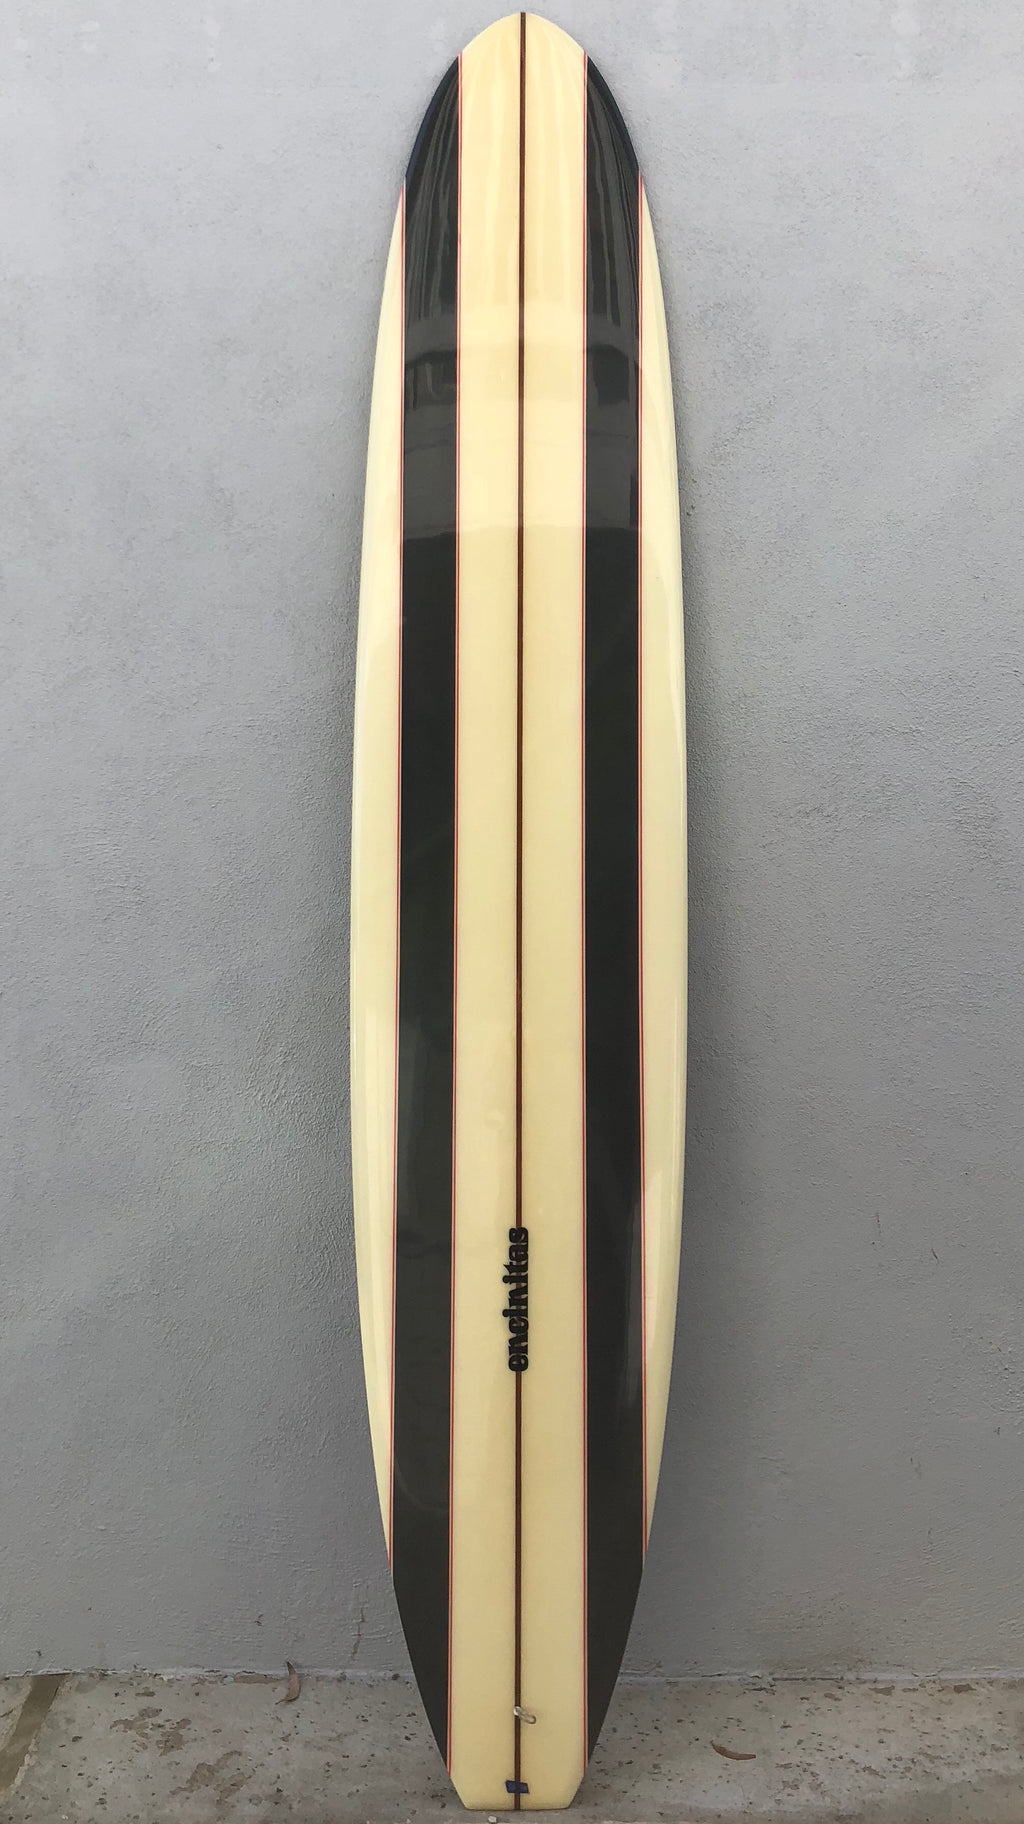 Encinitas Surfboards